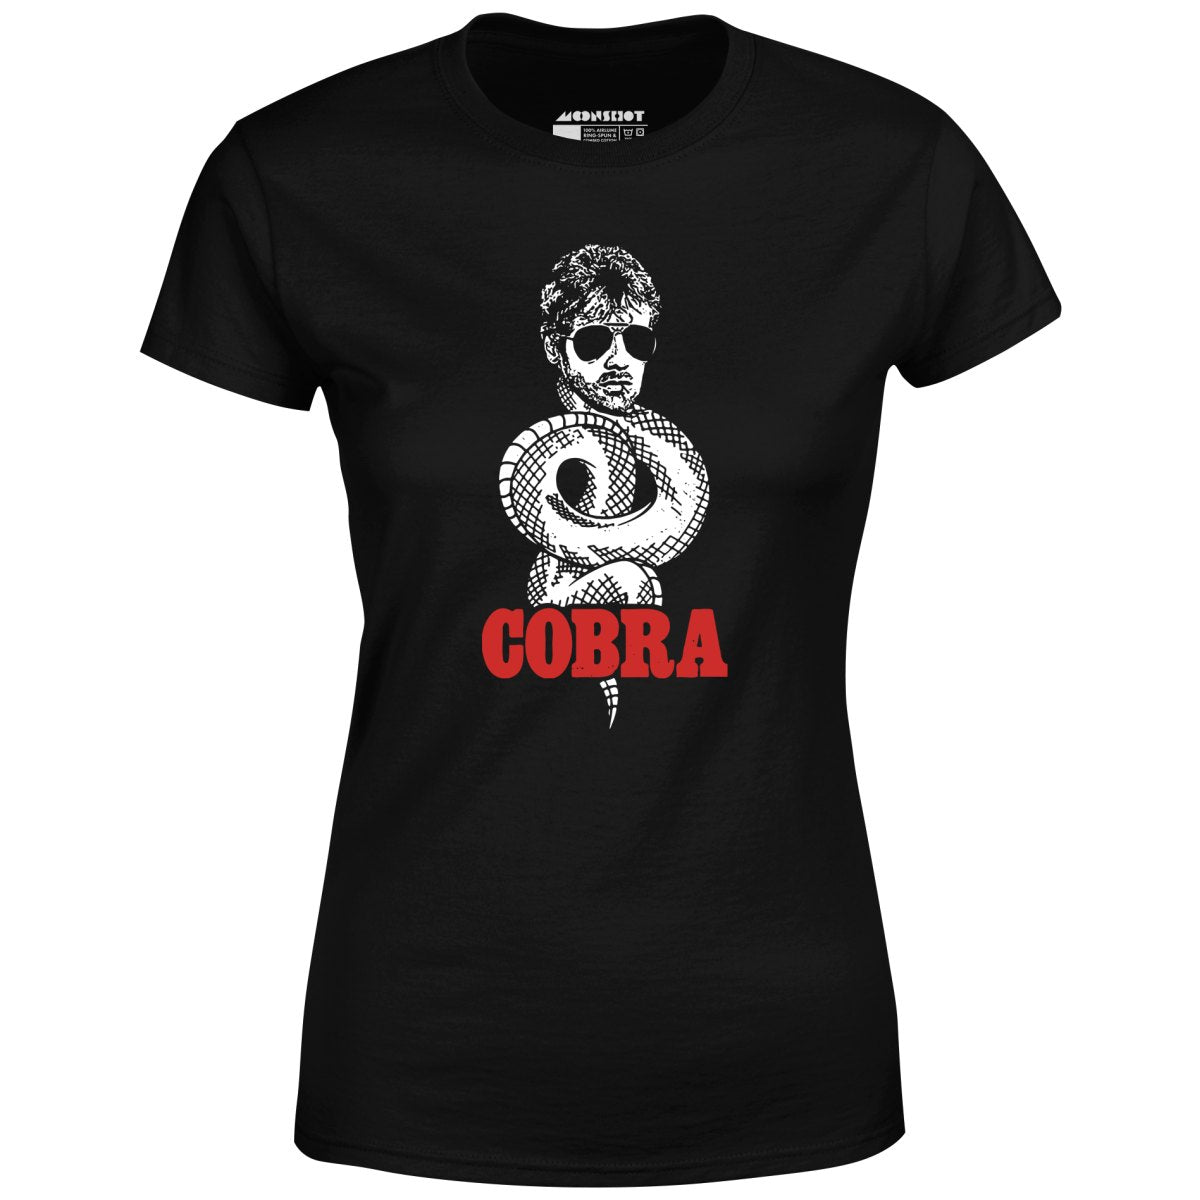 Cobra - Women's T-Shirt